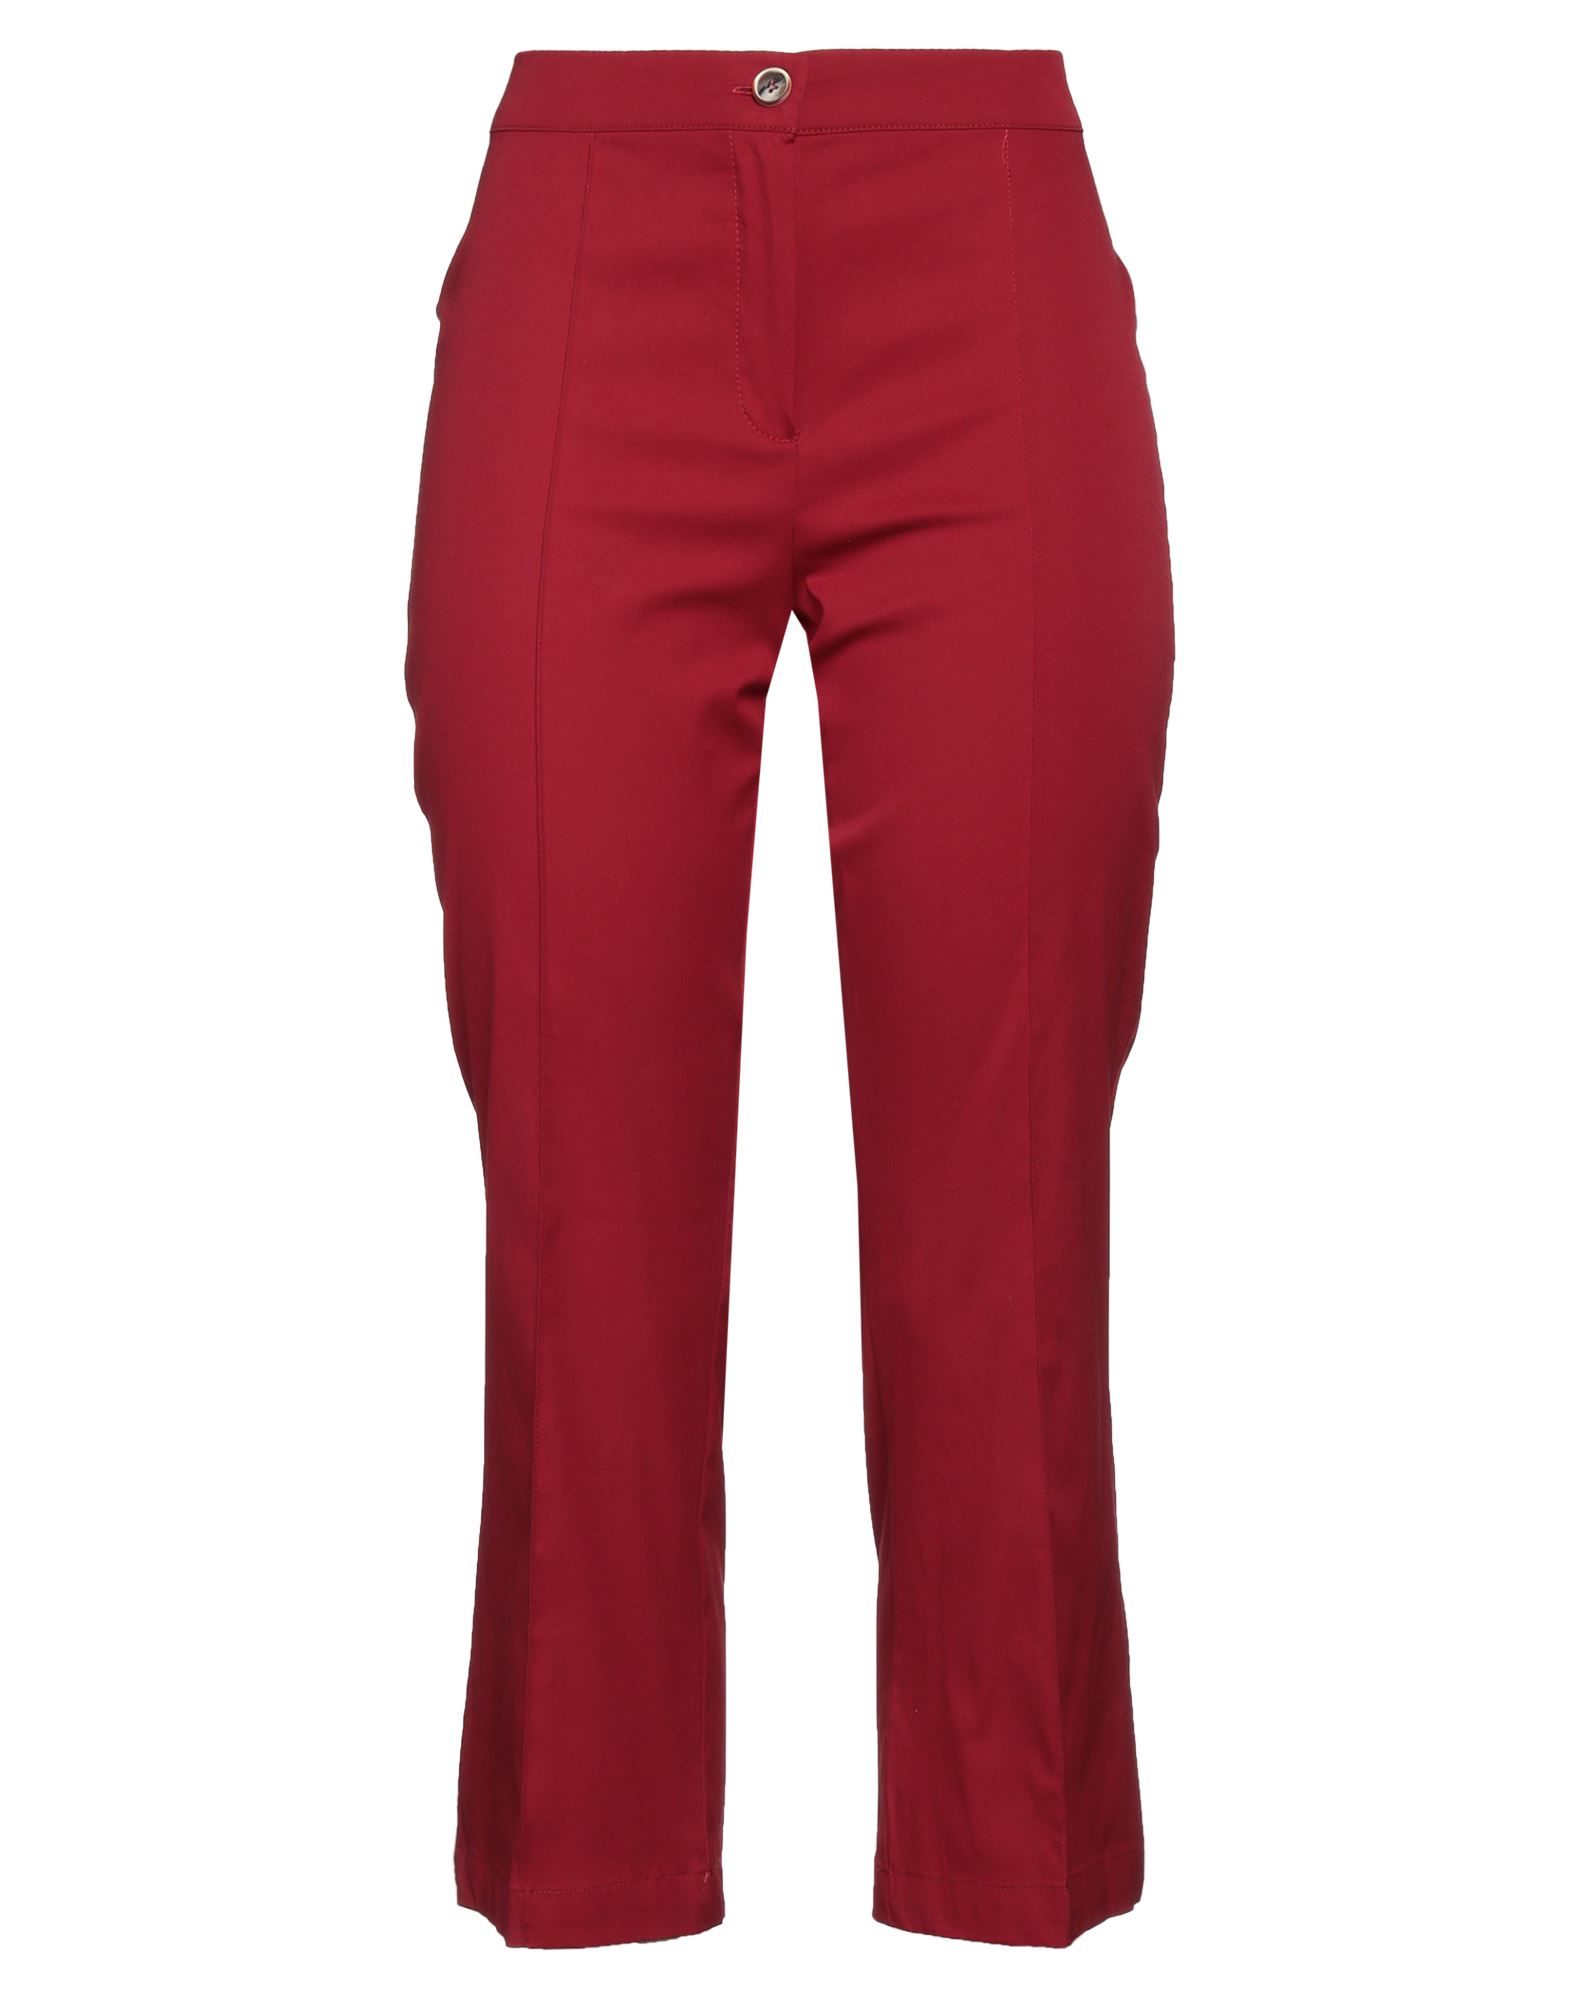 Diana Gallesi Woman Pants Garnet Size 6 Cotton, Polyamide, Elastane In Red